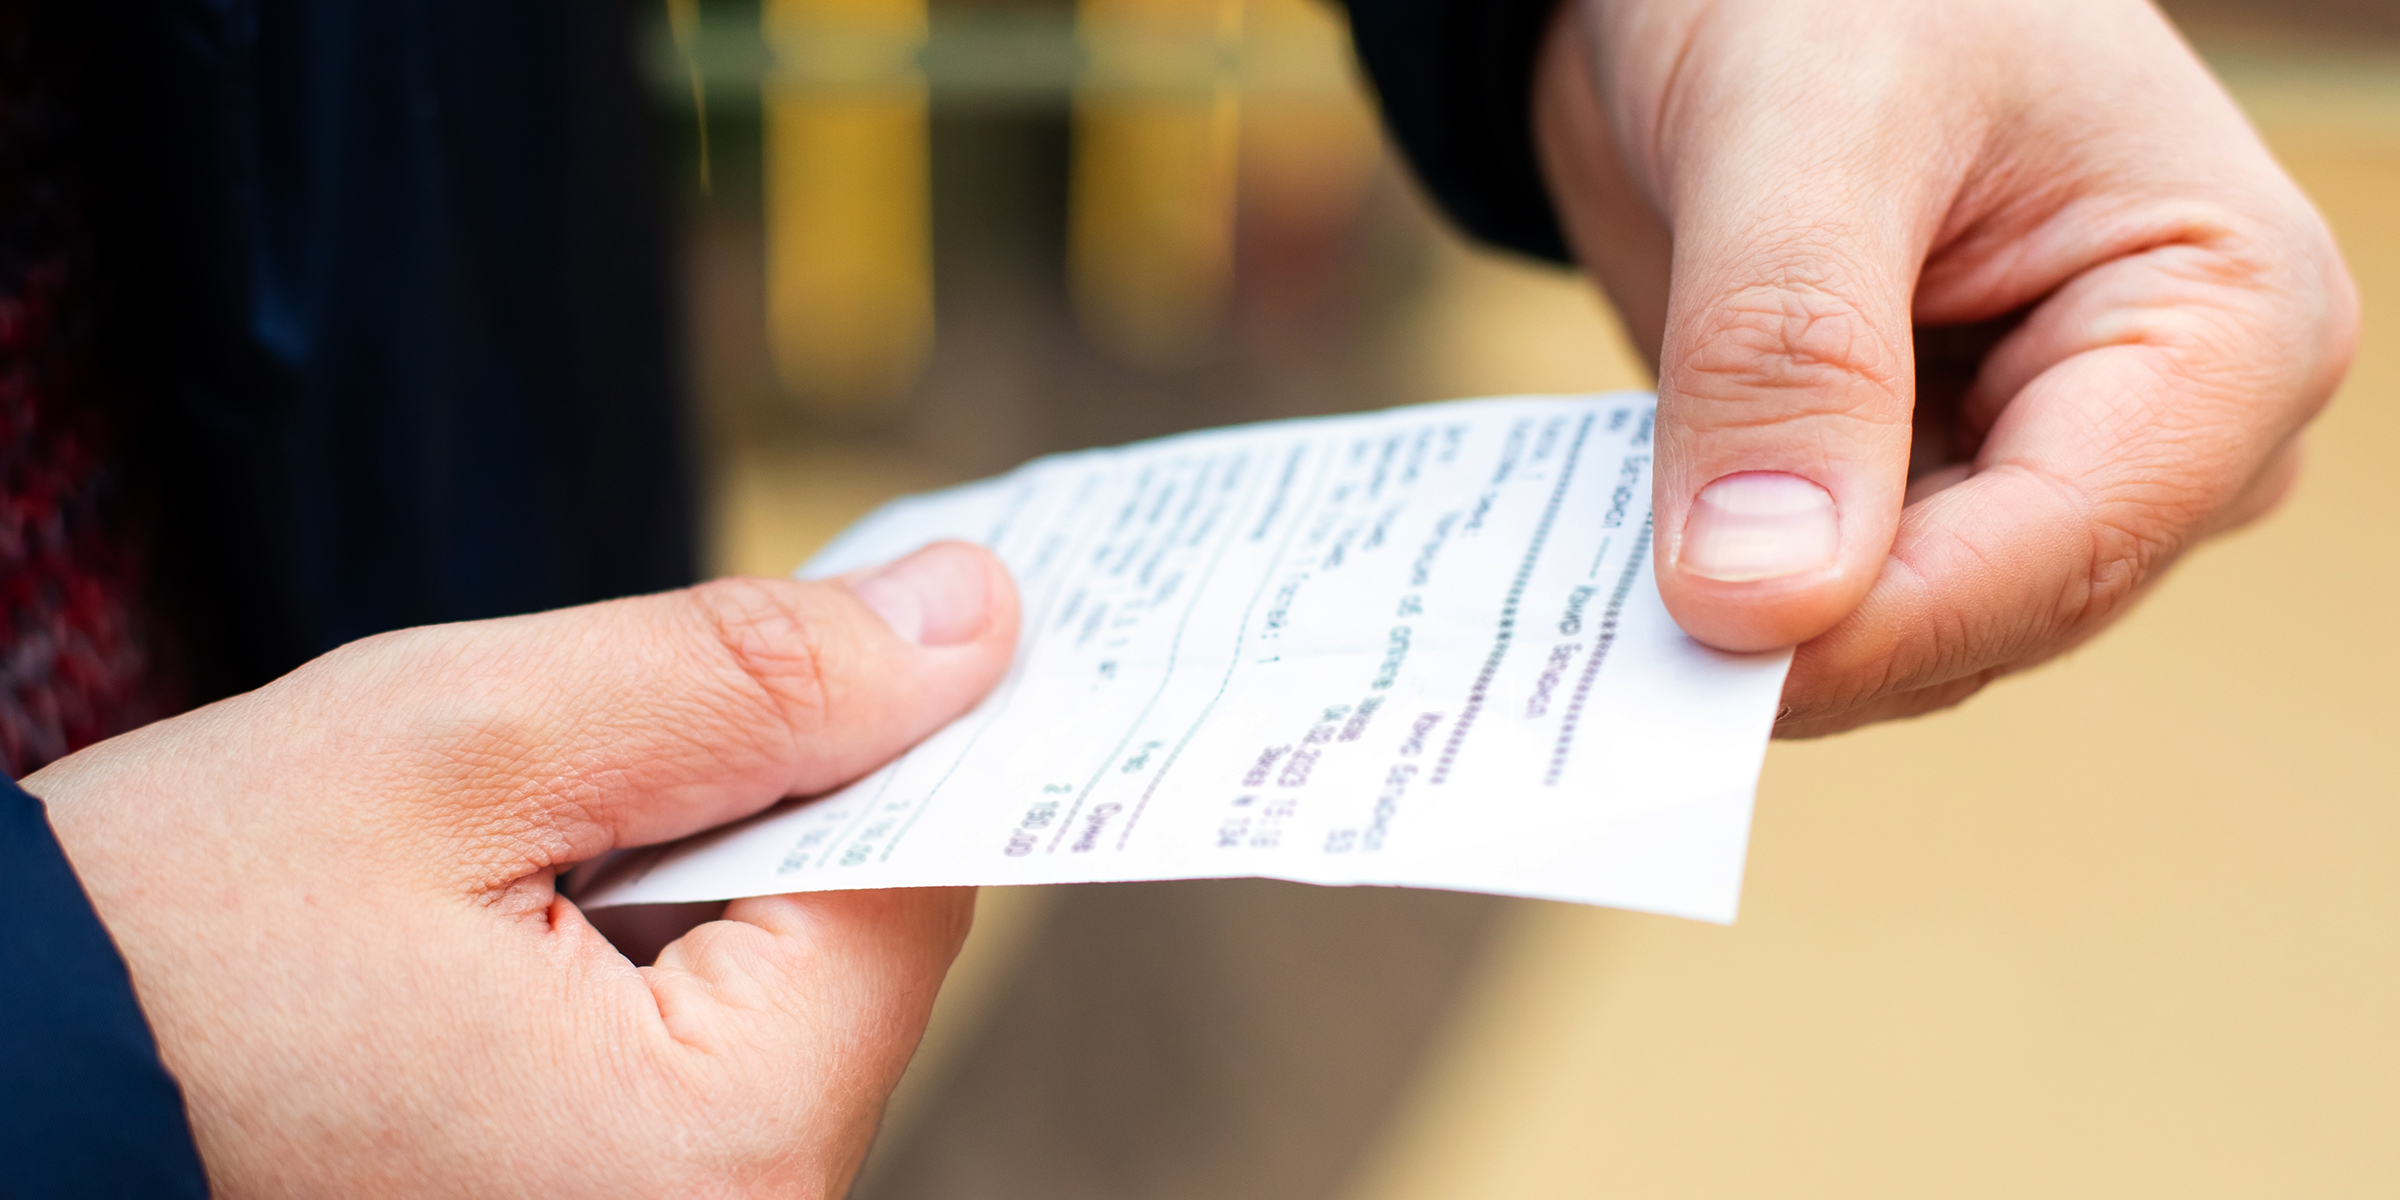 Les mains d'une personne tenant un reçu | Source : Shutterstock